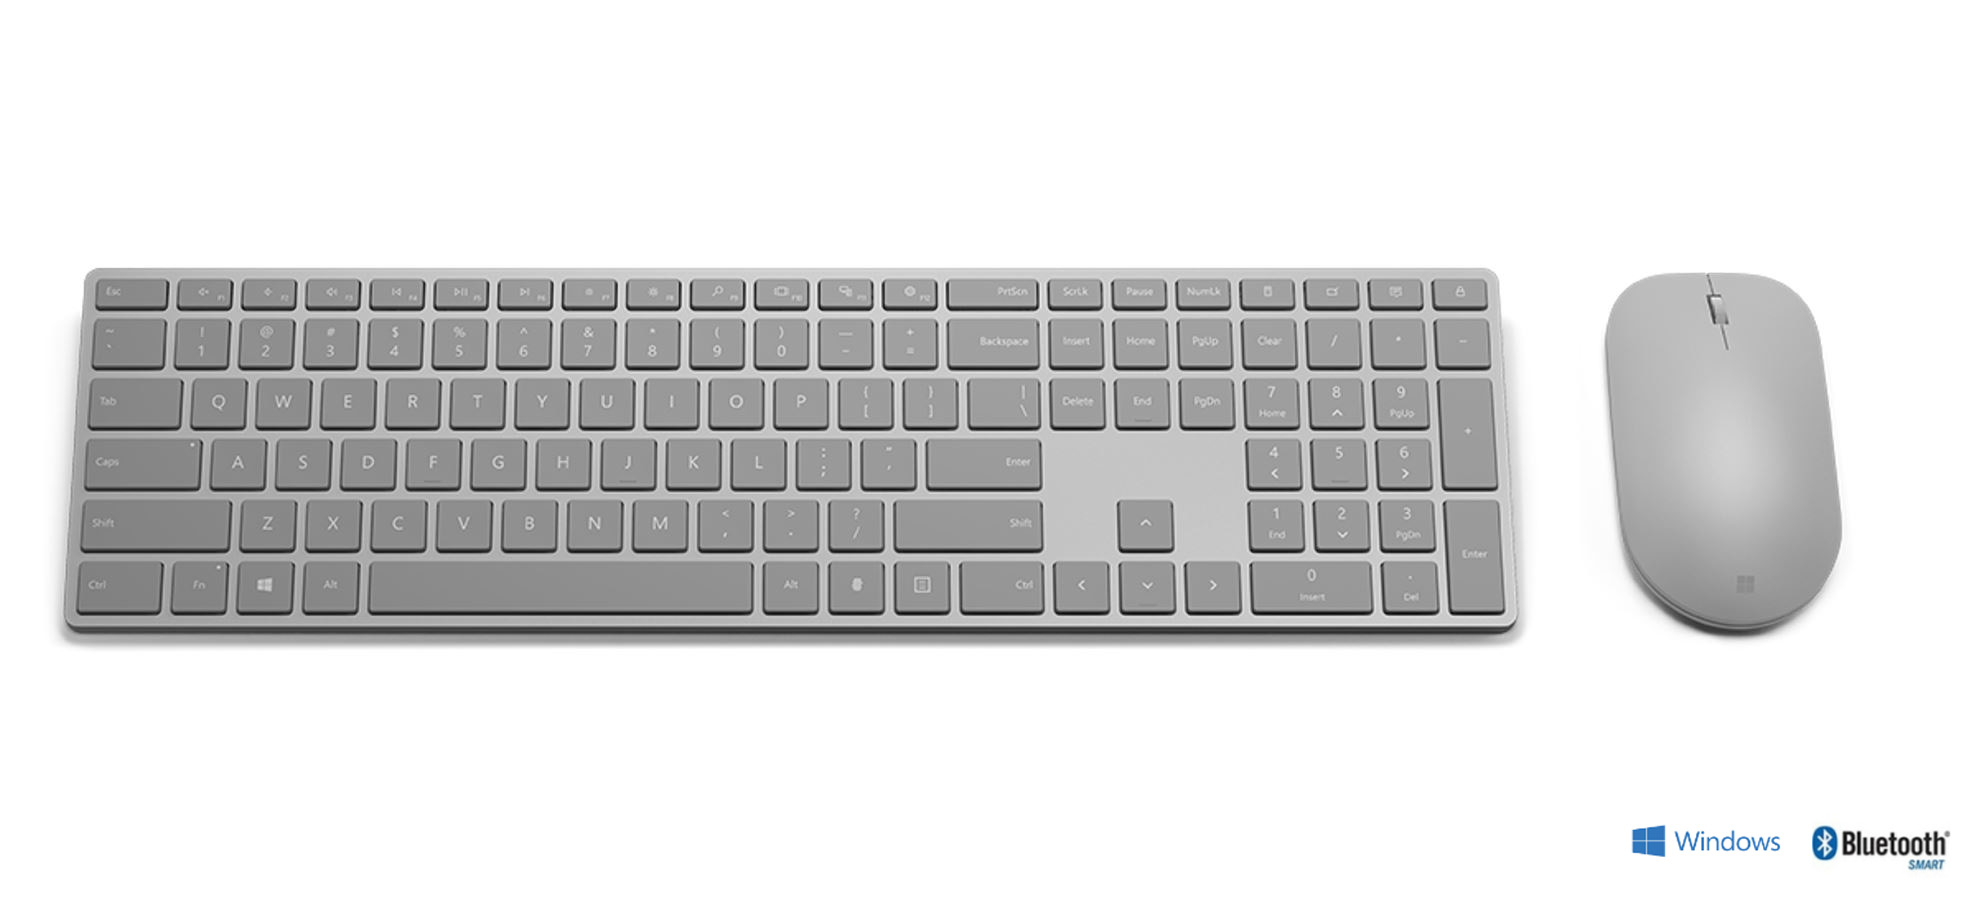 microsoft modern keyboard and mouse.jpg